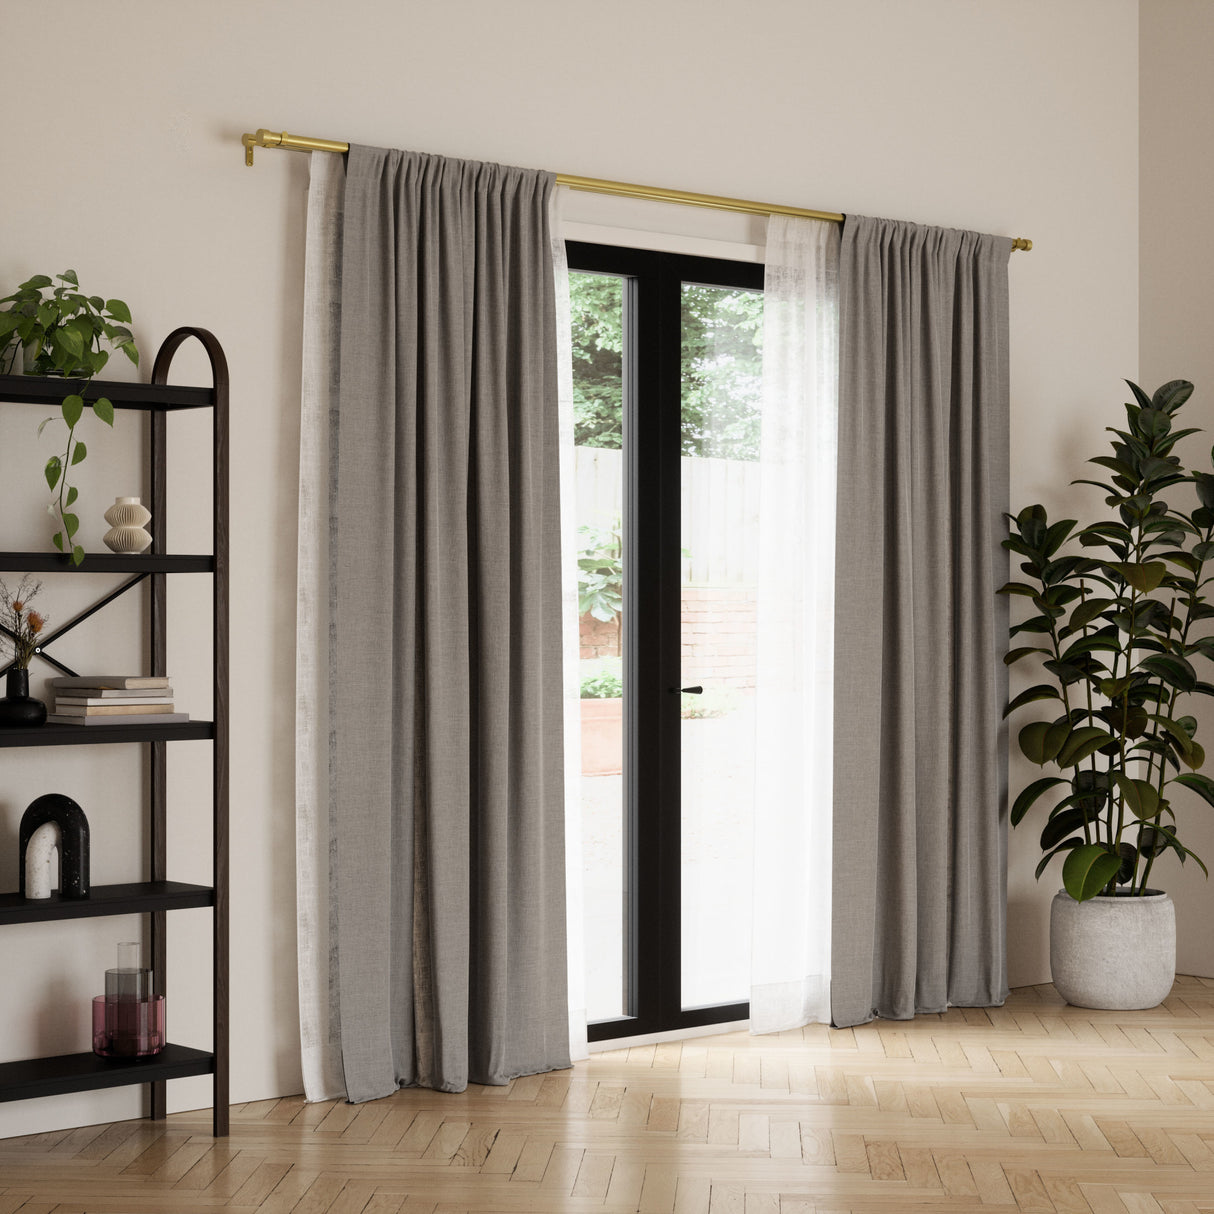 Double Curtain Rods | color: Brass | size: 120-180" (305-457 cm) | diameter: 1" (2.5 cm)